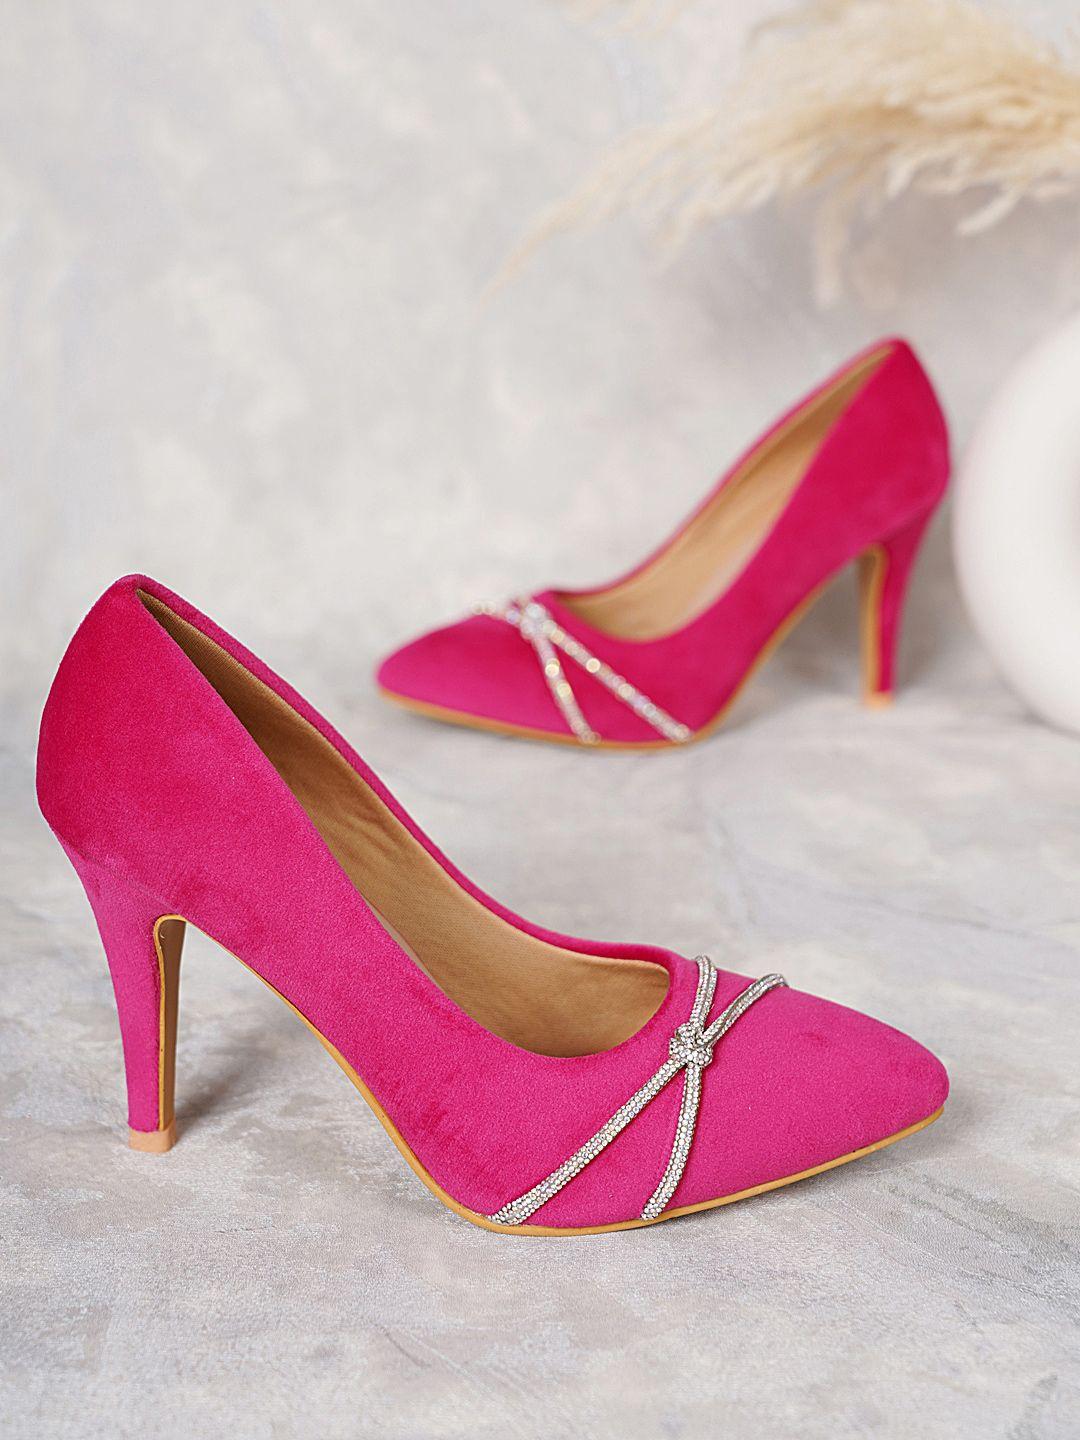 dressberry pink embellished velvet pumps heels